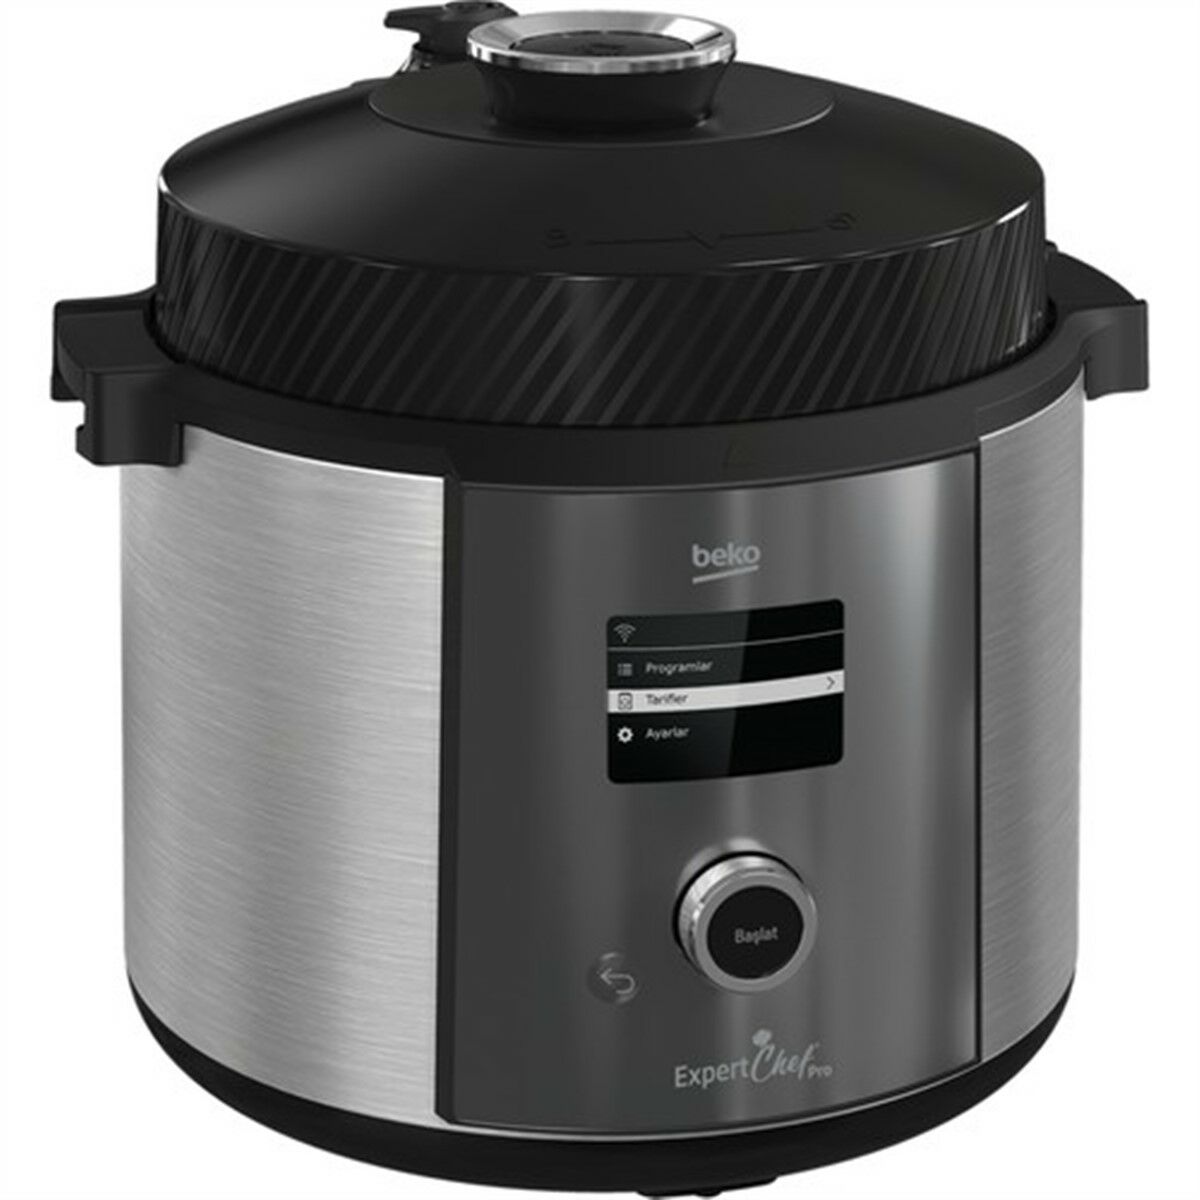 Beko MC 5251 ExpertChef® Pro Çok Amaçlı Pişirici